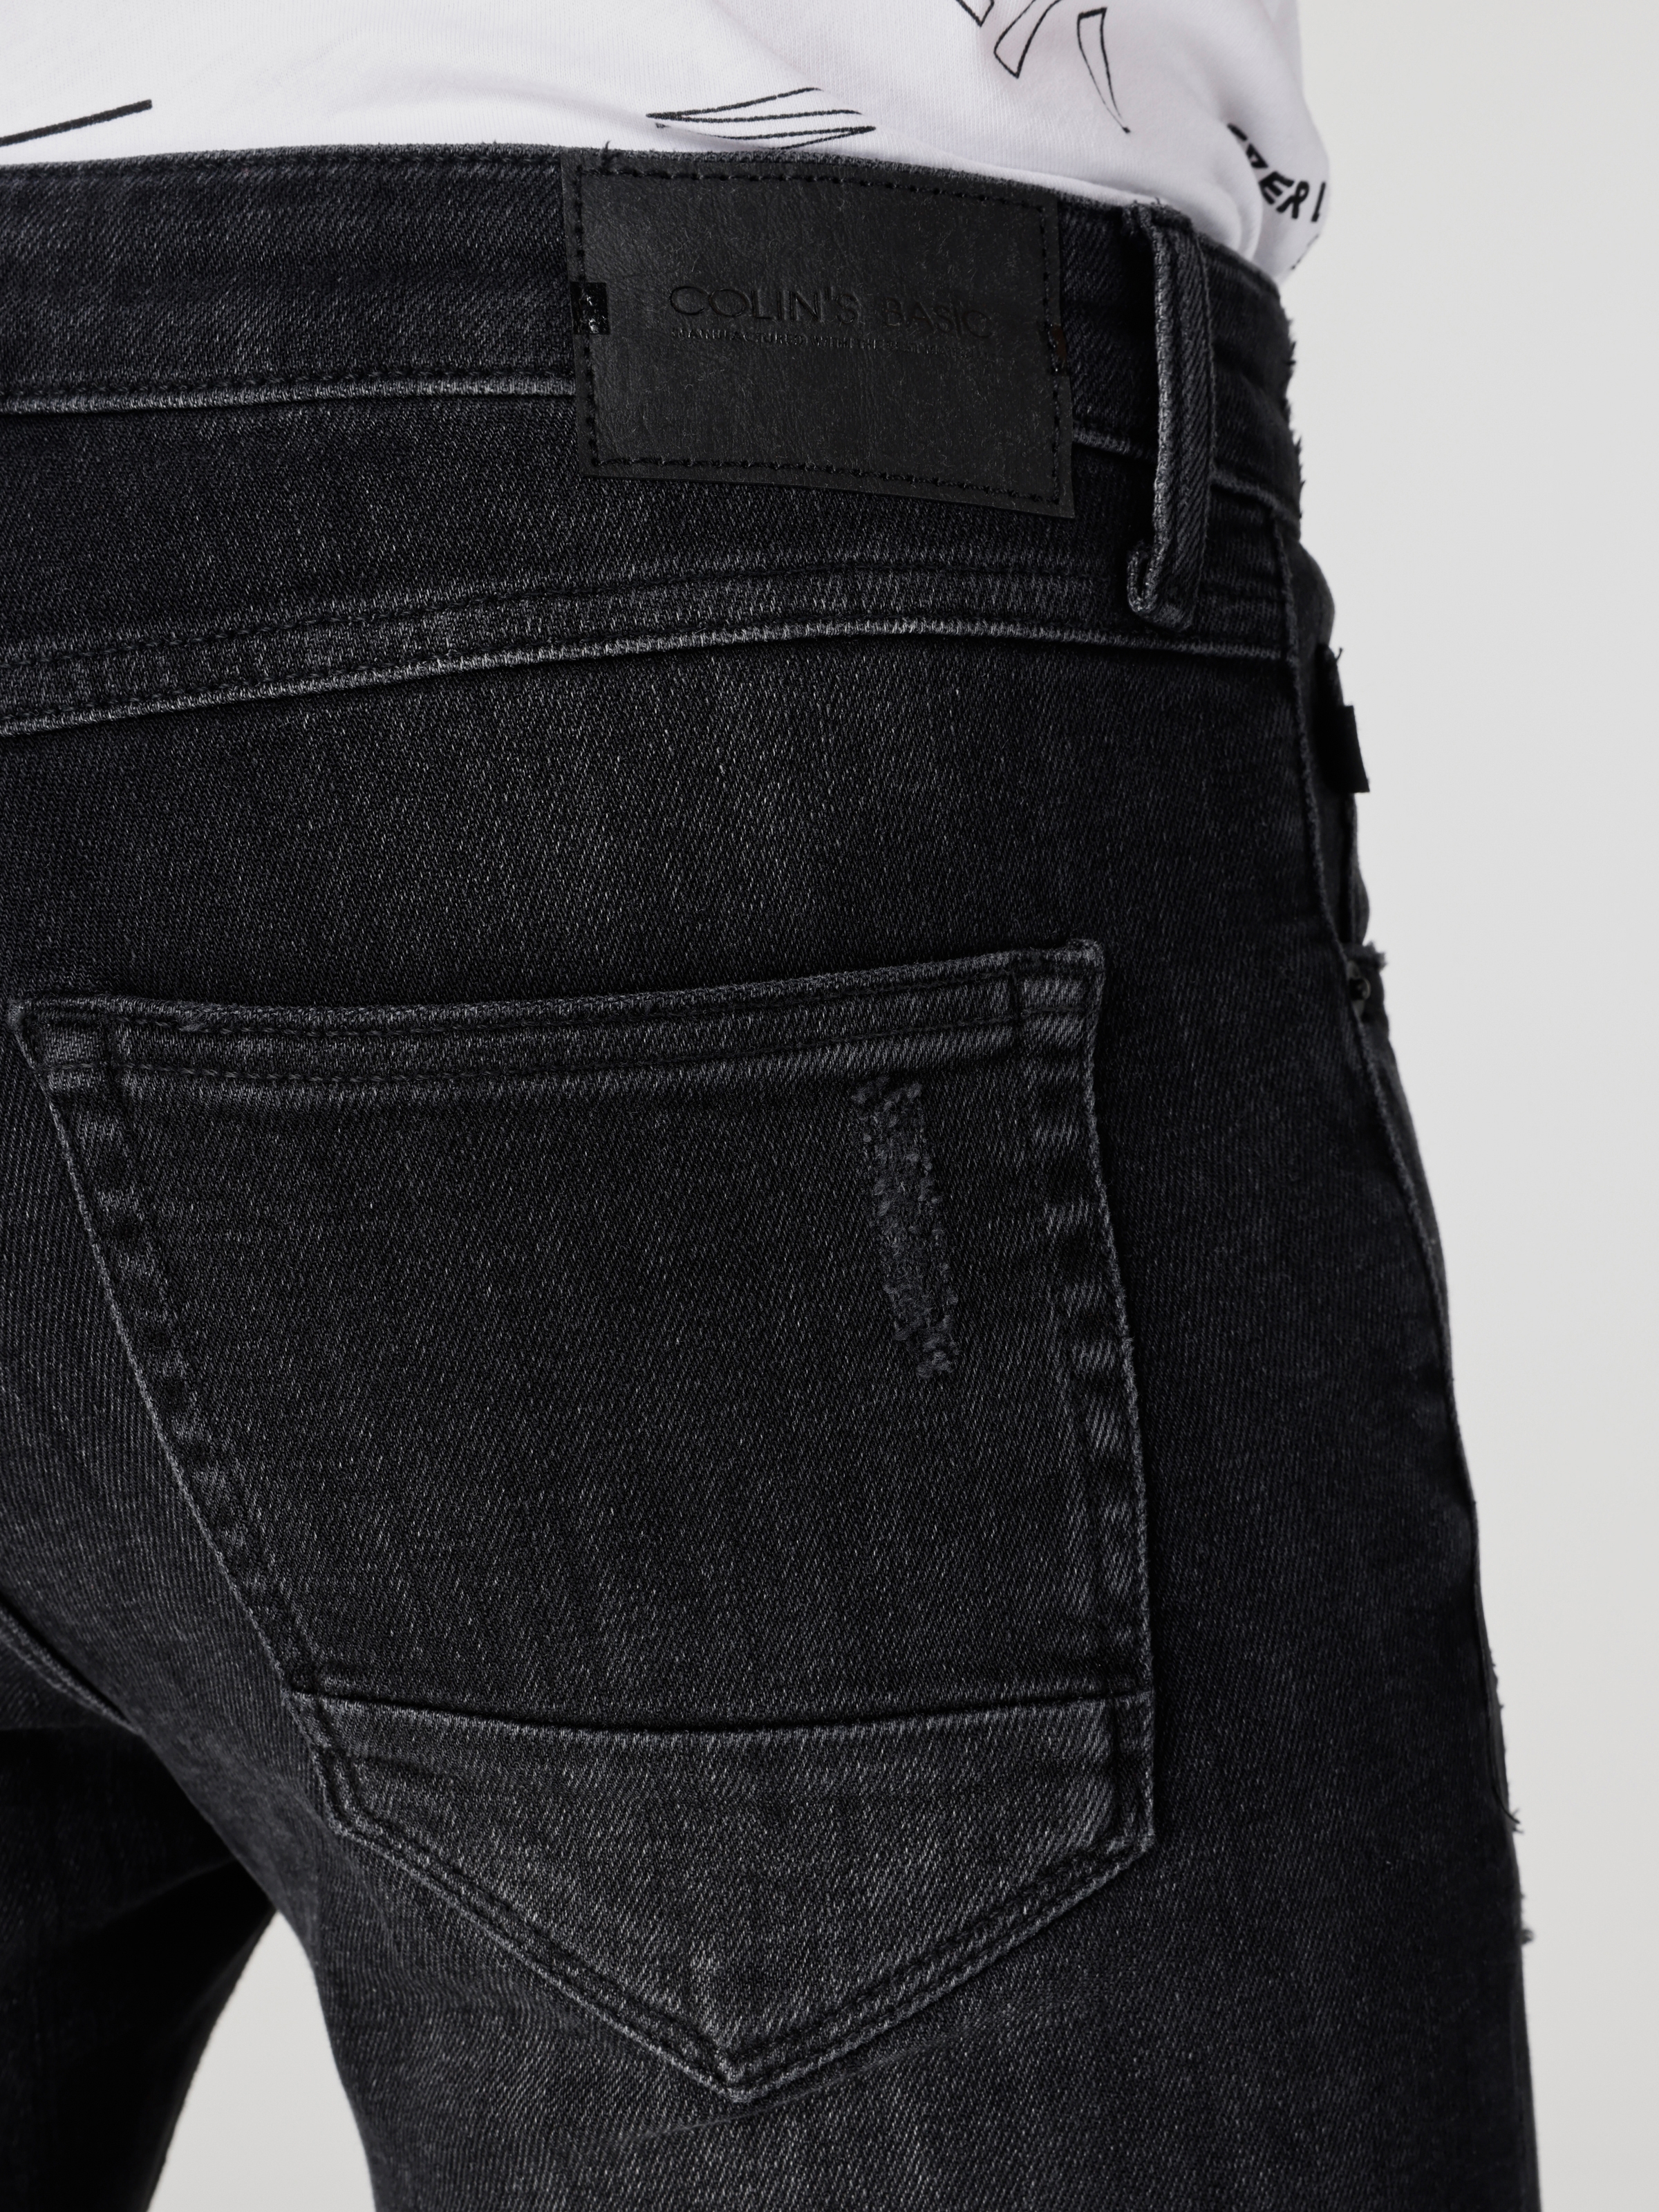 اعرض التفاصيل لـ 041 داني بنطال جينز ضيق منخفض الخصر وضيق الساق باللون الأسود للرجال